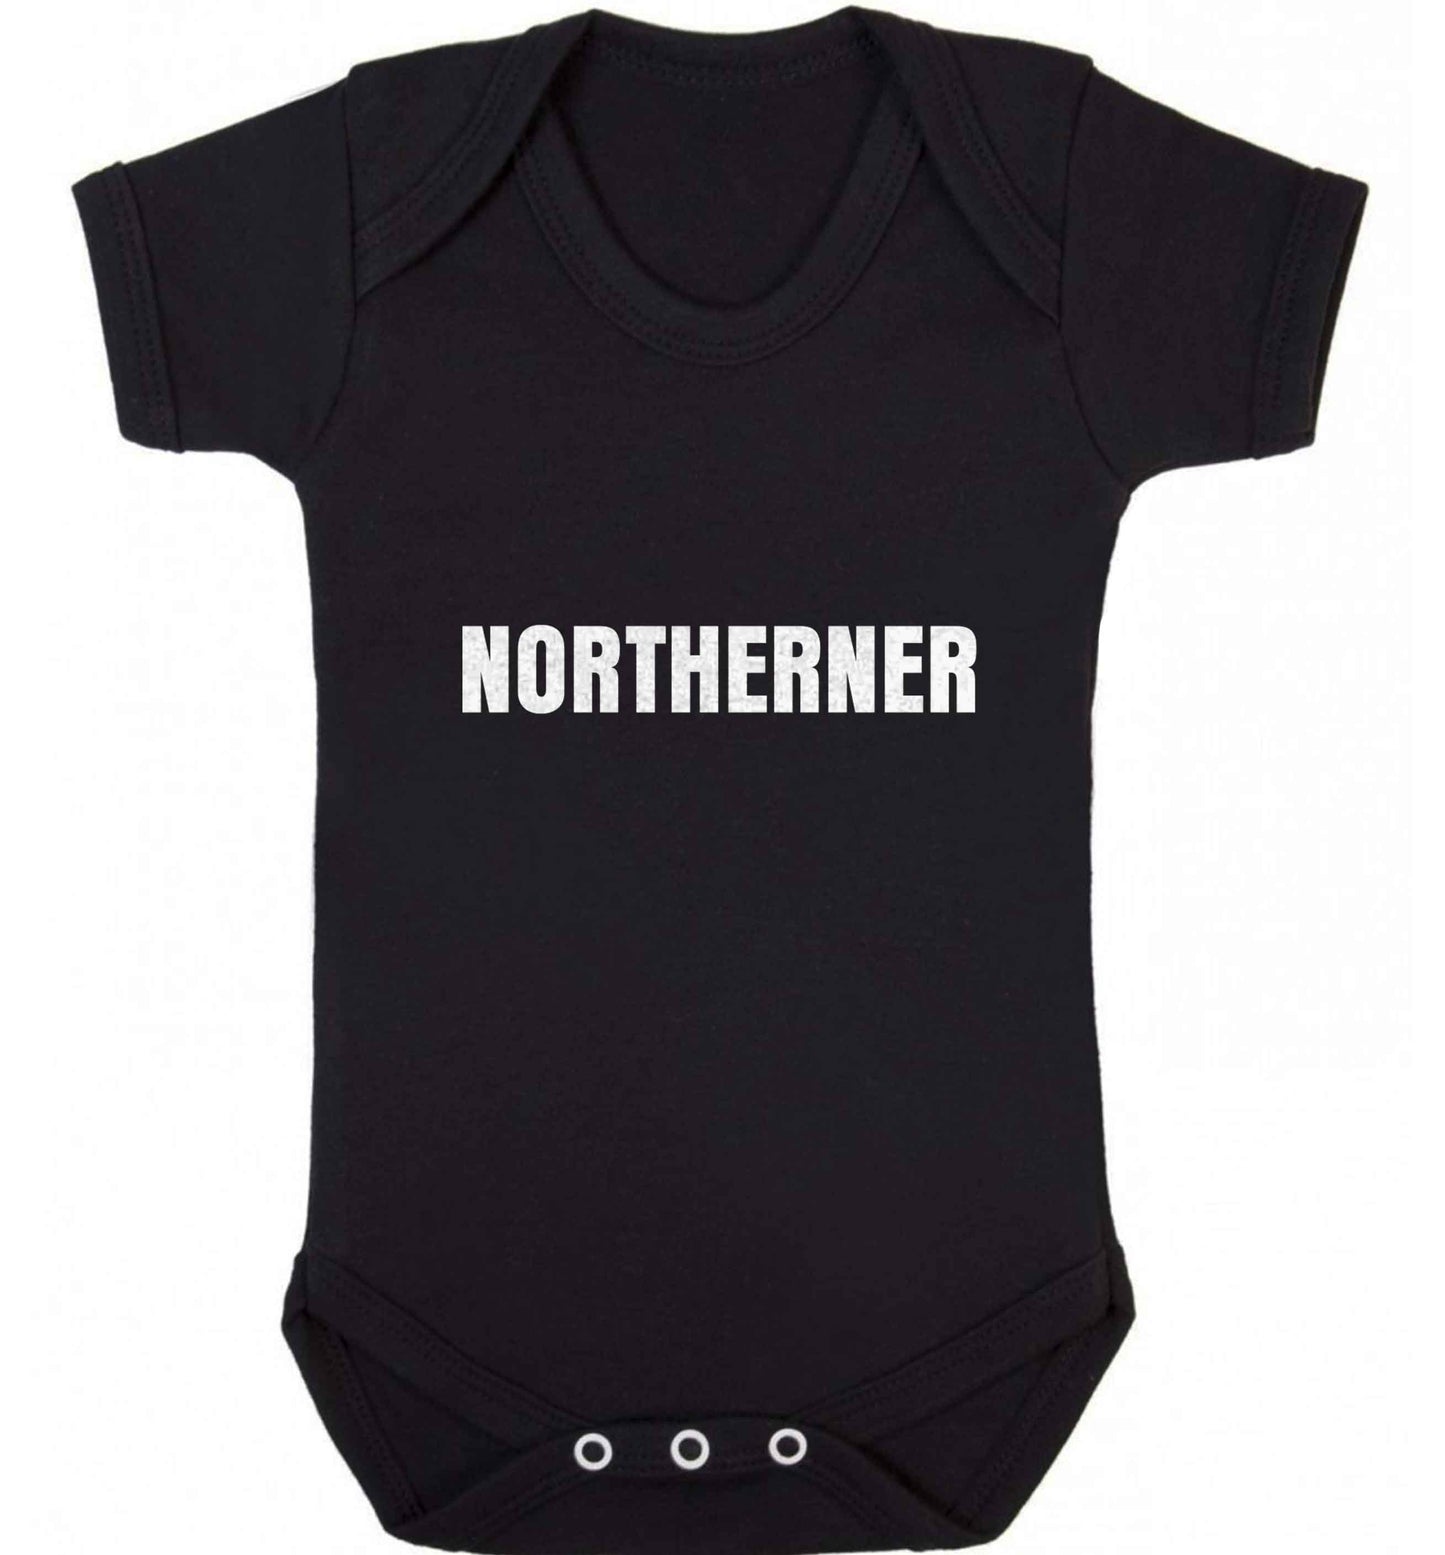 Northerner baby vest black 18-24 months